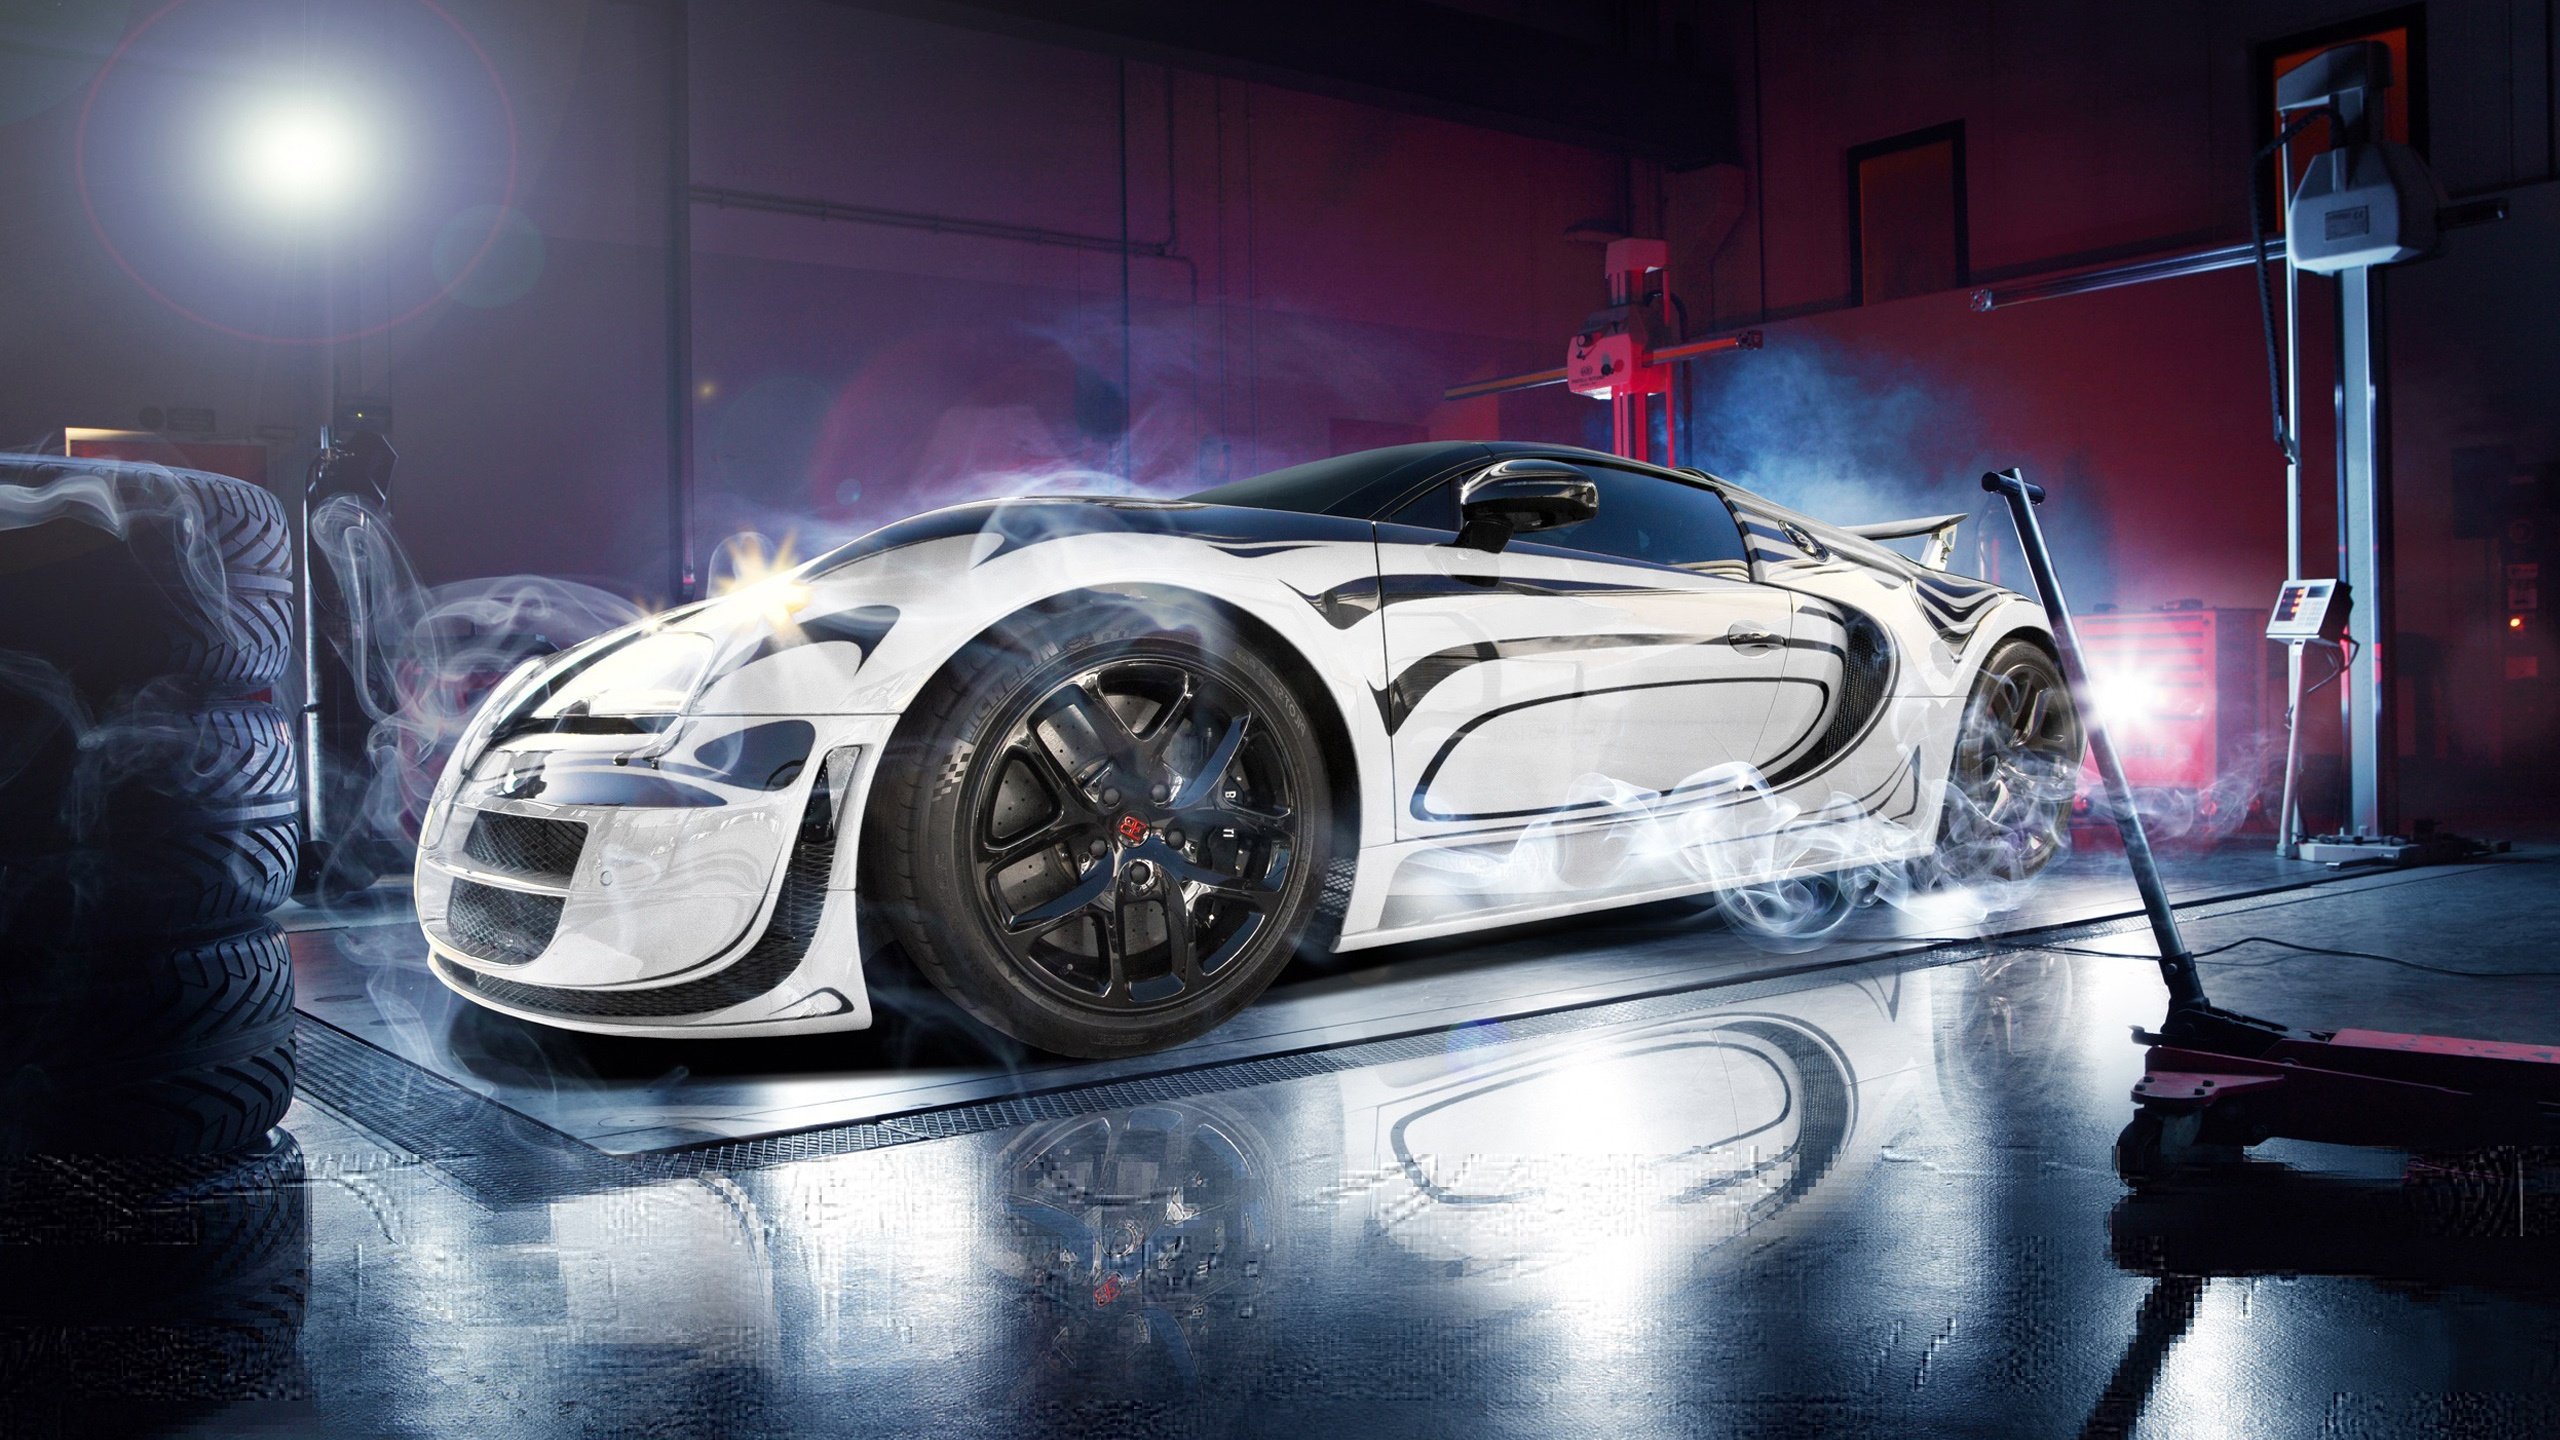 Hãy chào đón siêu xe Bugatti Veyron HD Wallpaper với một loạt hình nền đầy sức hút trên màn hình của bạn. Sự đẳng cấp và hoàn hảo của chiếc siêu xe này đã được tô điểm và tái hiện chân thực nhất với độ phân giải cao. Hãy trải nghiệm điều tuyệt vời đó.